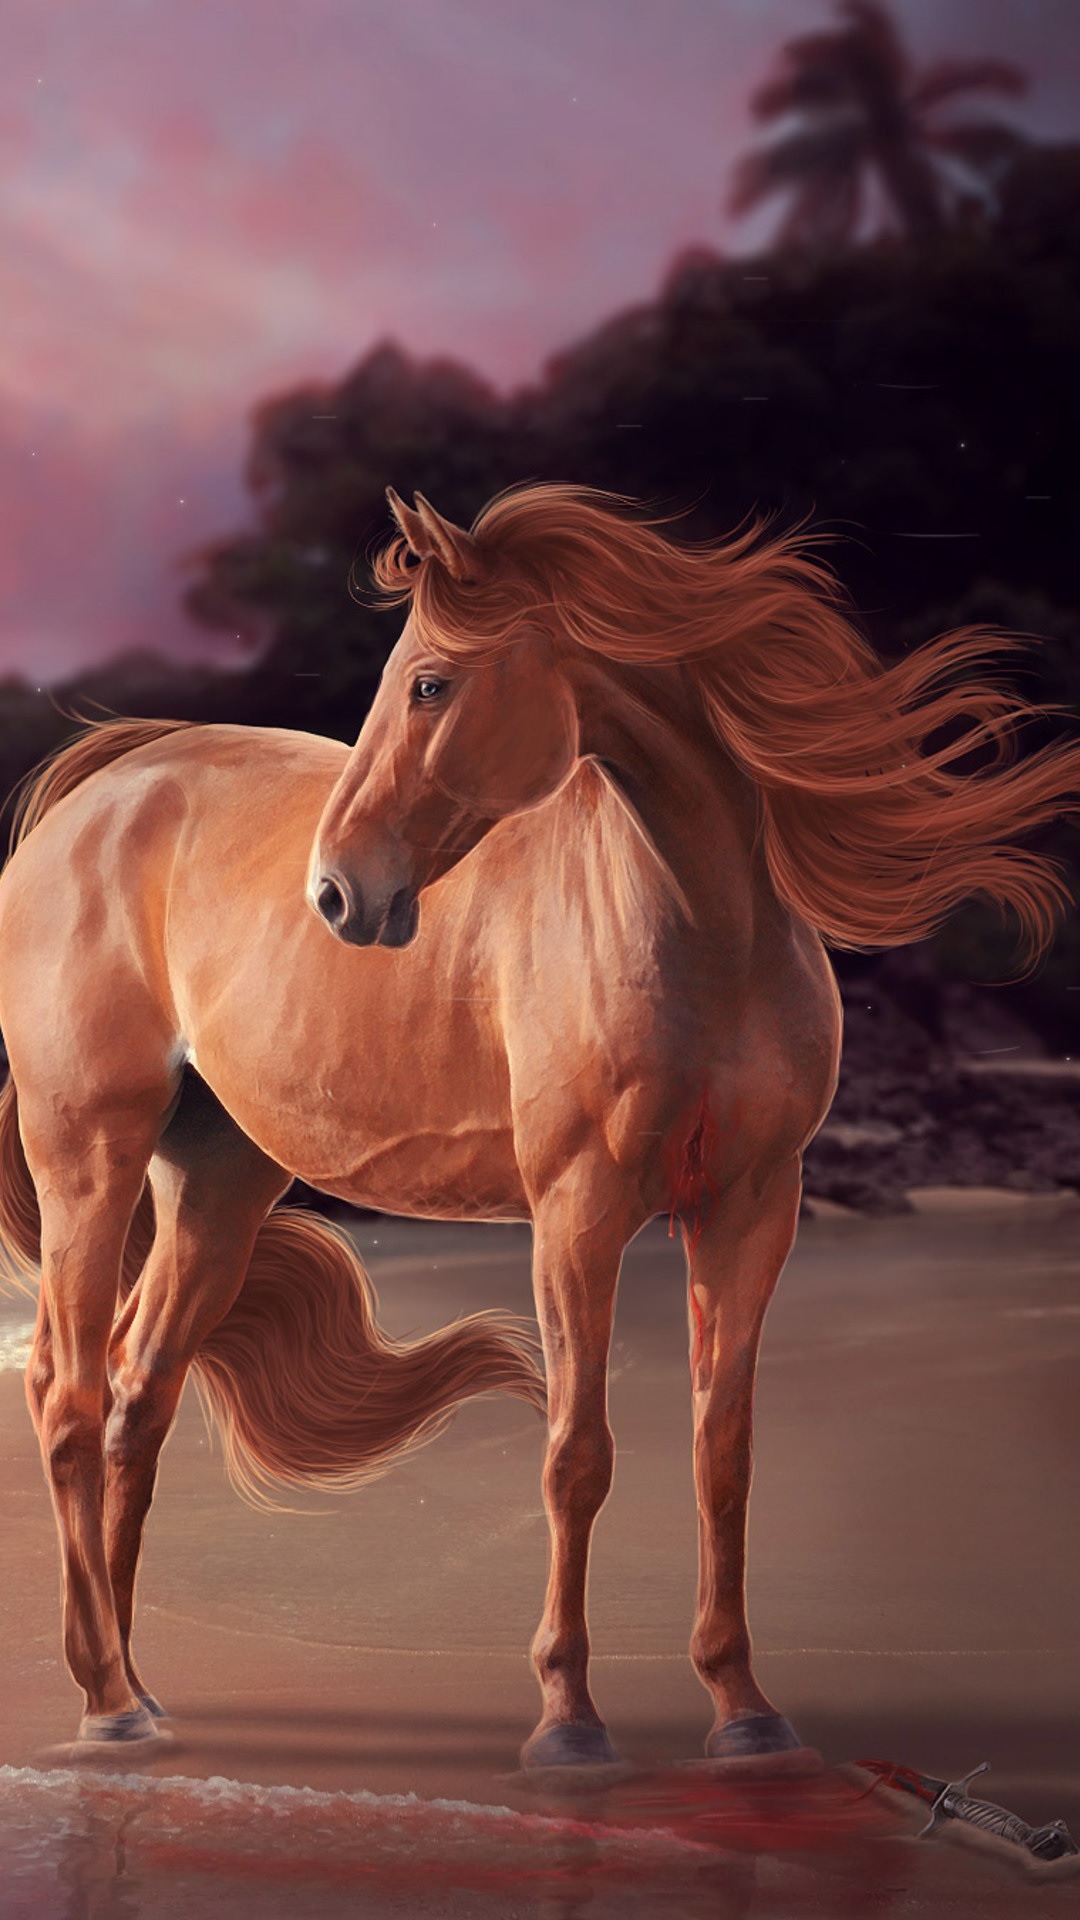 Hình ảnh ngựa 3D đang phi mã cực đẹp  Tải hình nền đẹp cho điện thoại hot  nhất năm Bính Thân 2016  Unicornios wallpaper Fotos de unicornios  Unicornio